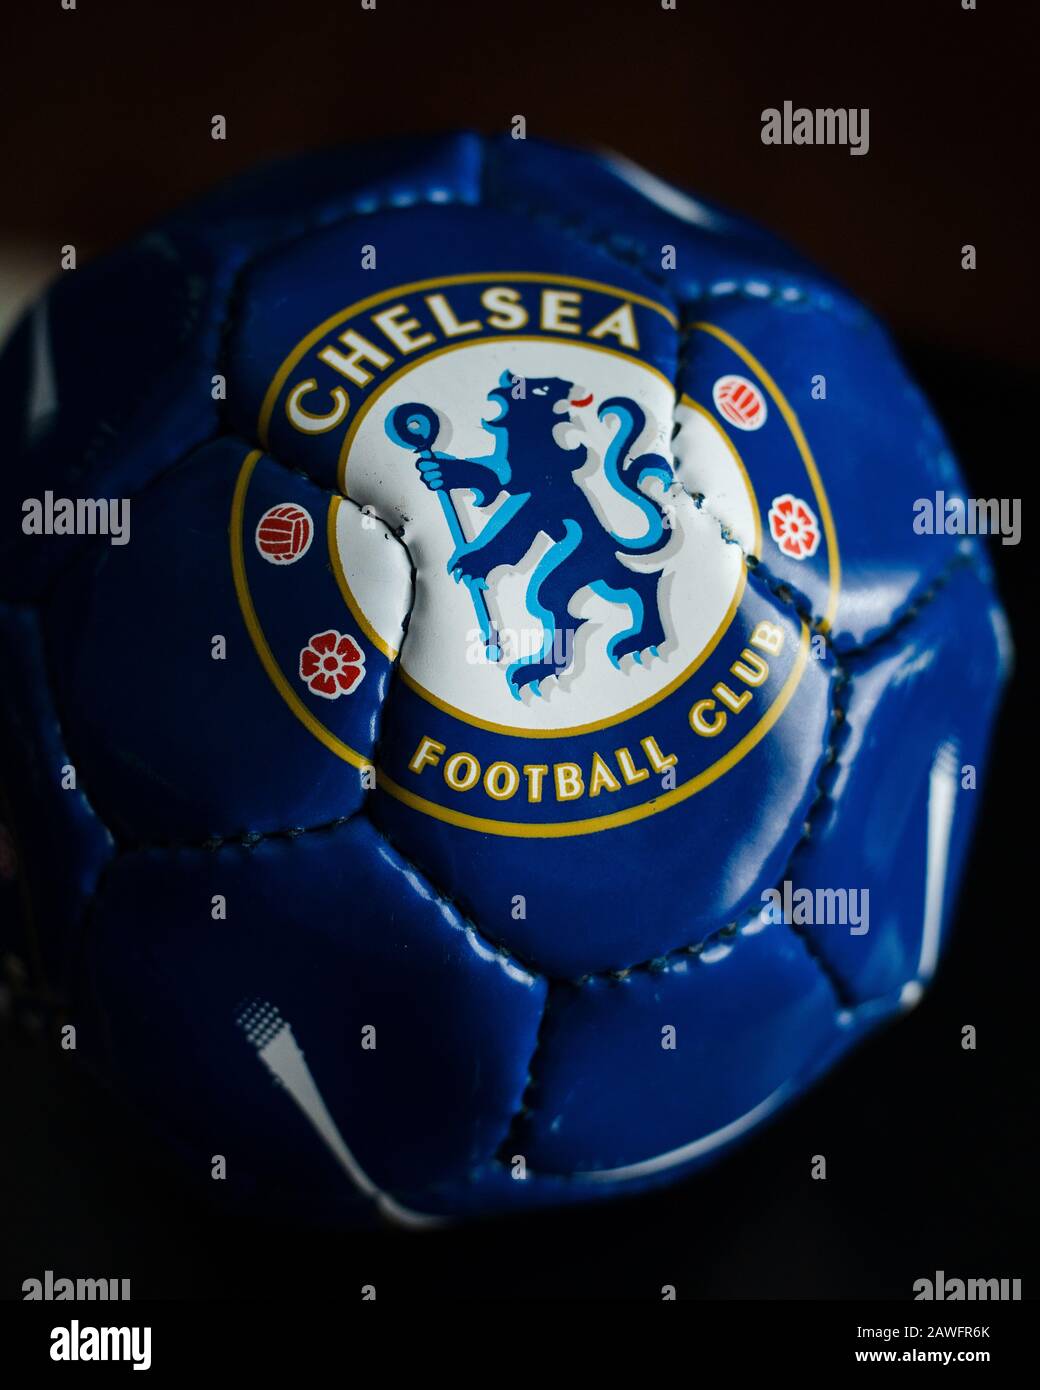 Tải Logo Chelsea đẹp định dạng PNG, JPG - Trung Cấp Nghề Thương Mại Du Lịch  Thanh Hoá